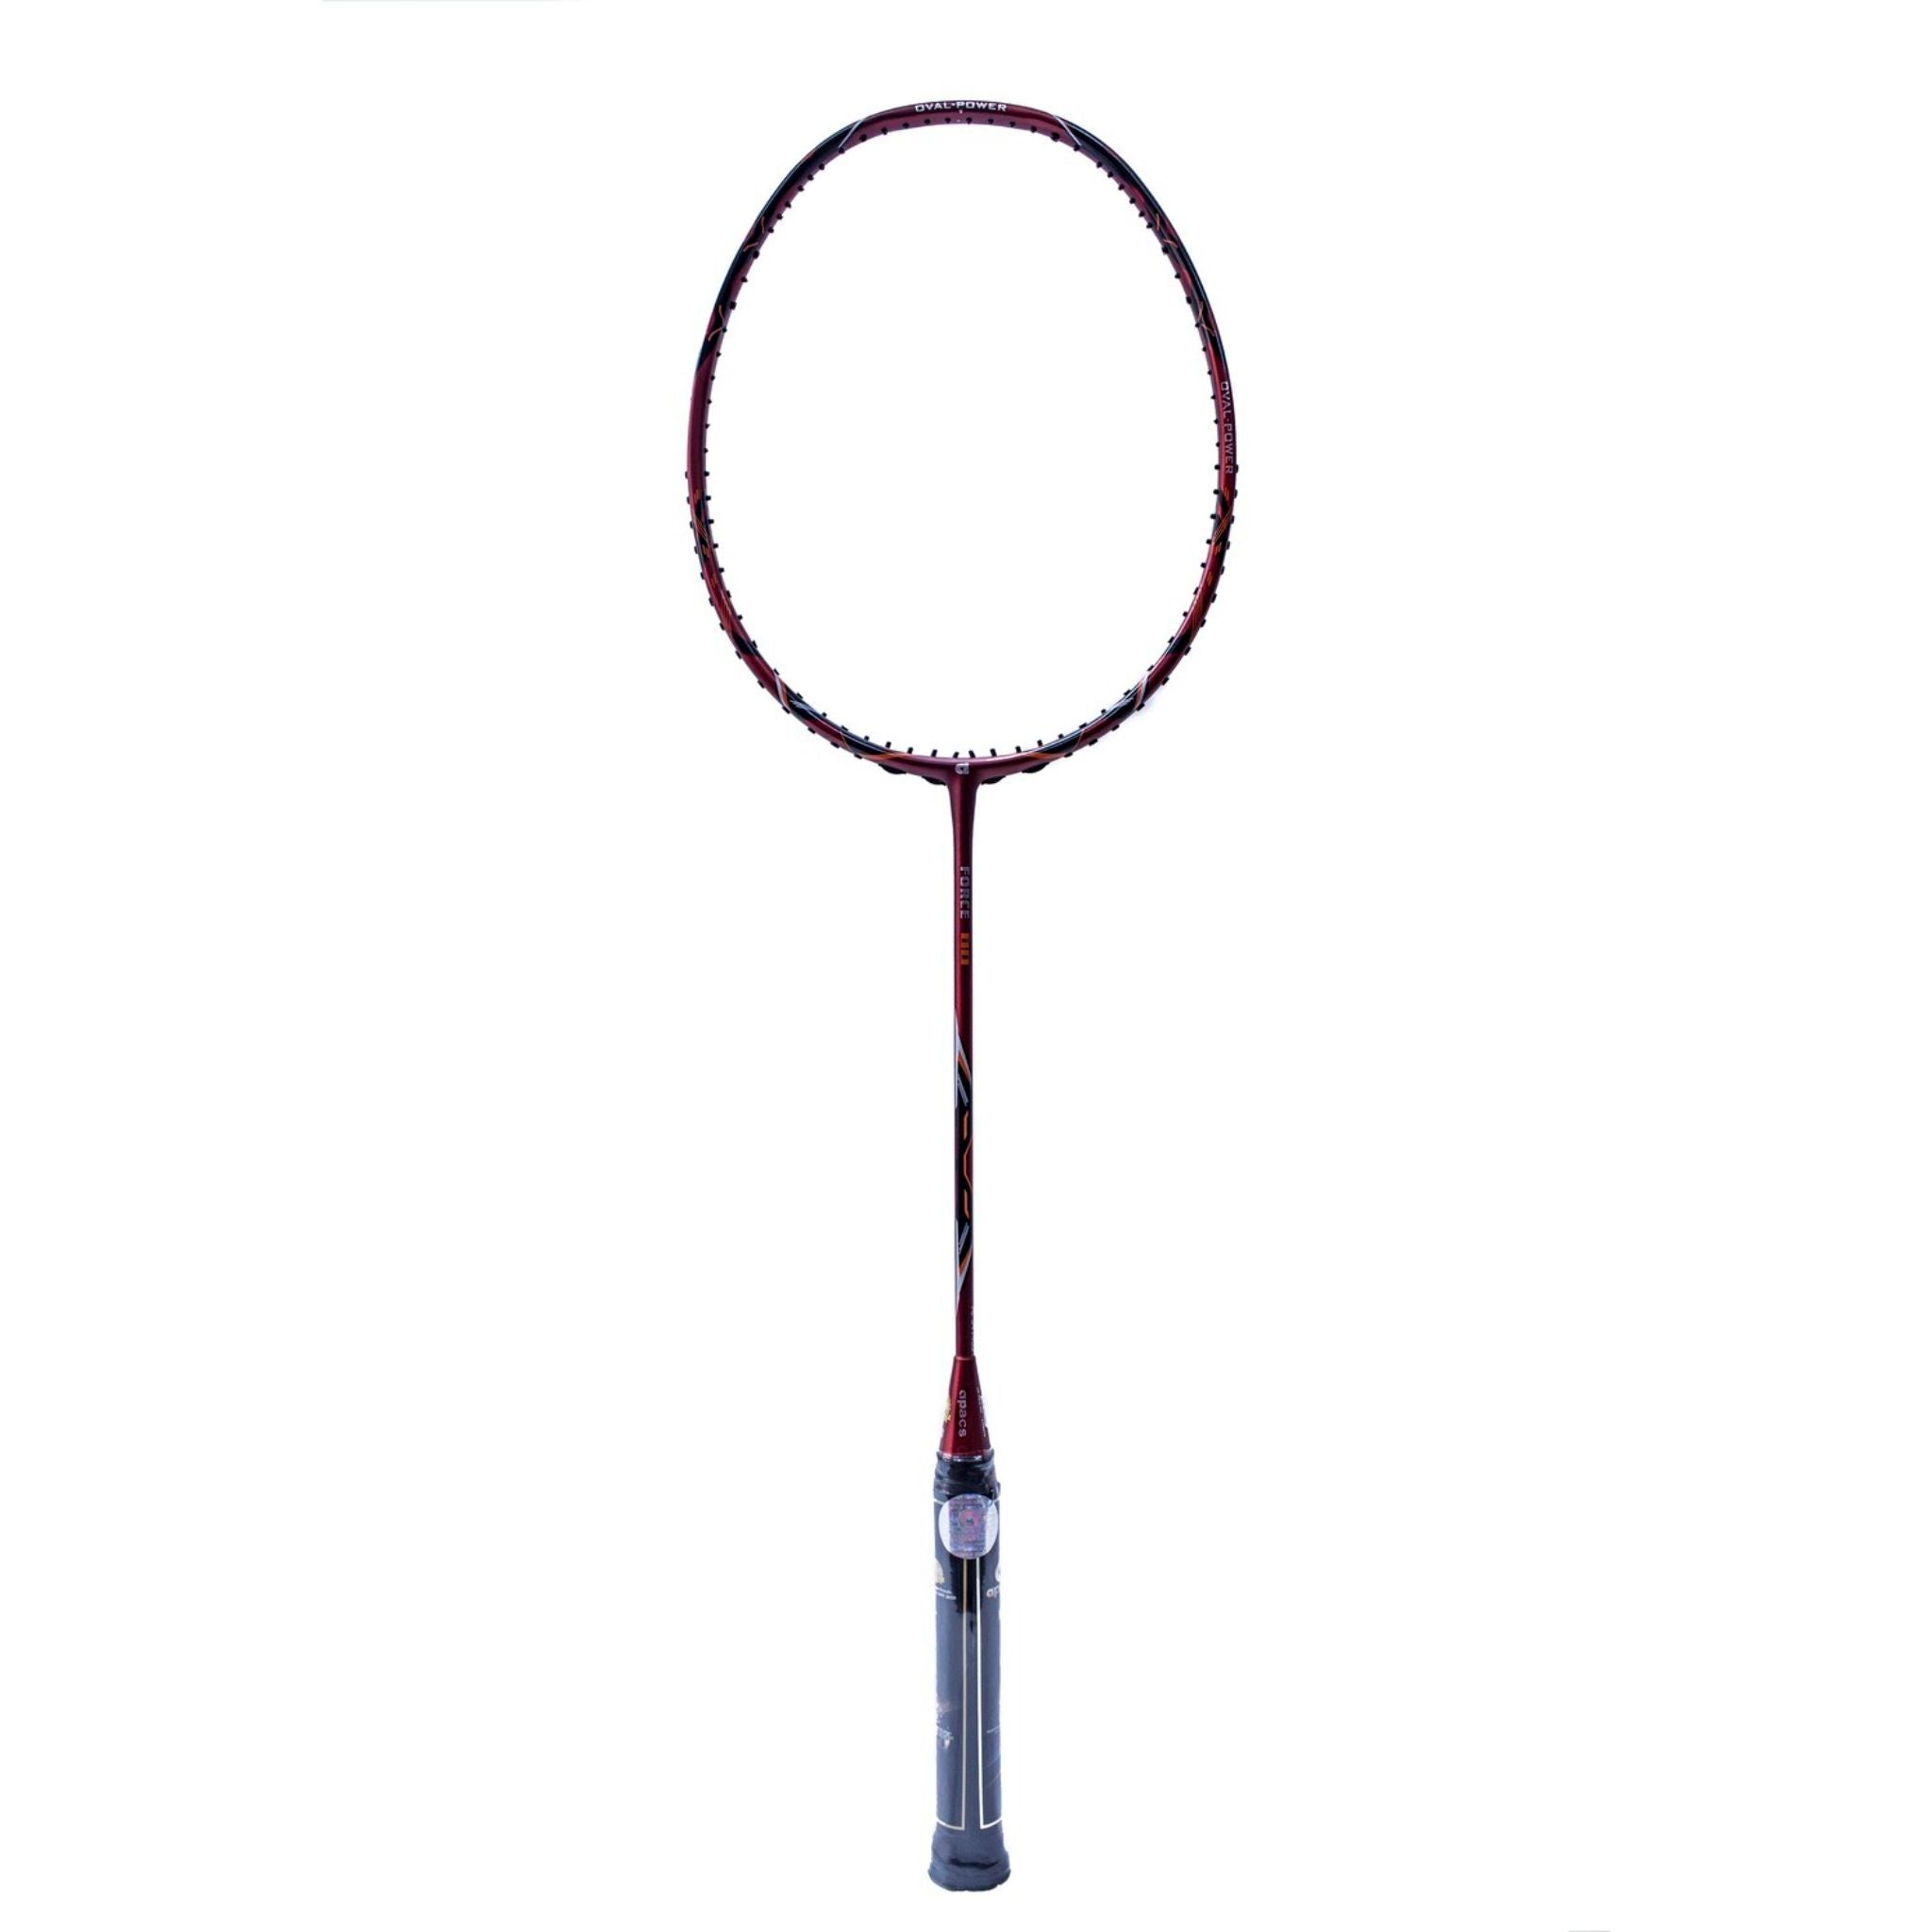 APACS Force 80 Badminton Racket